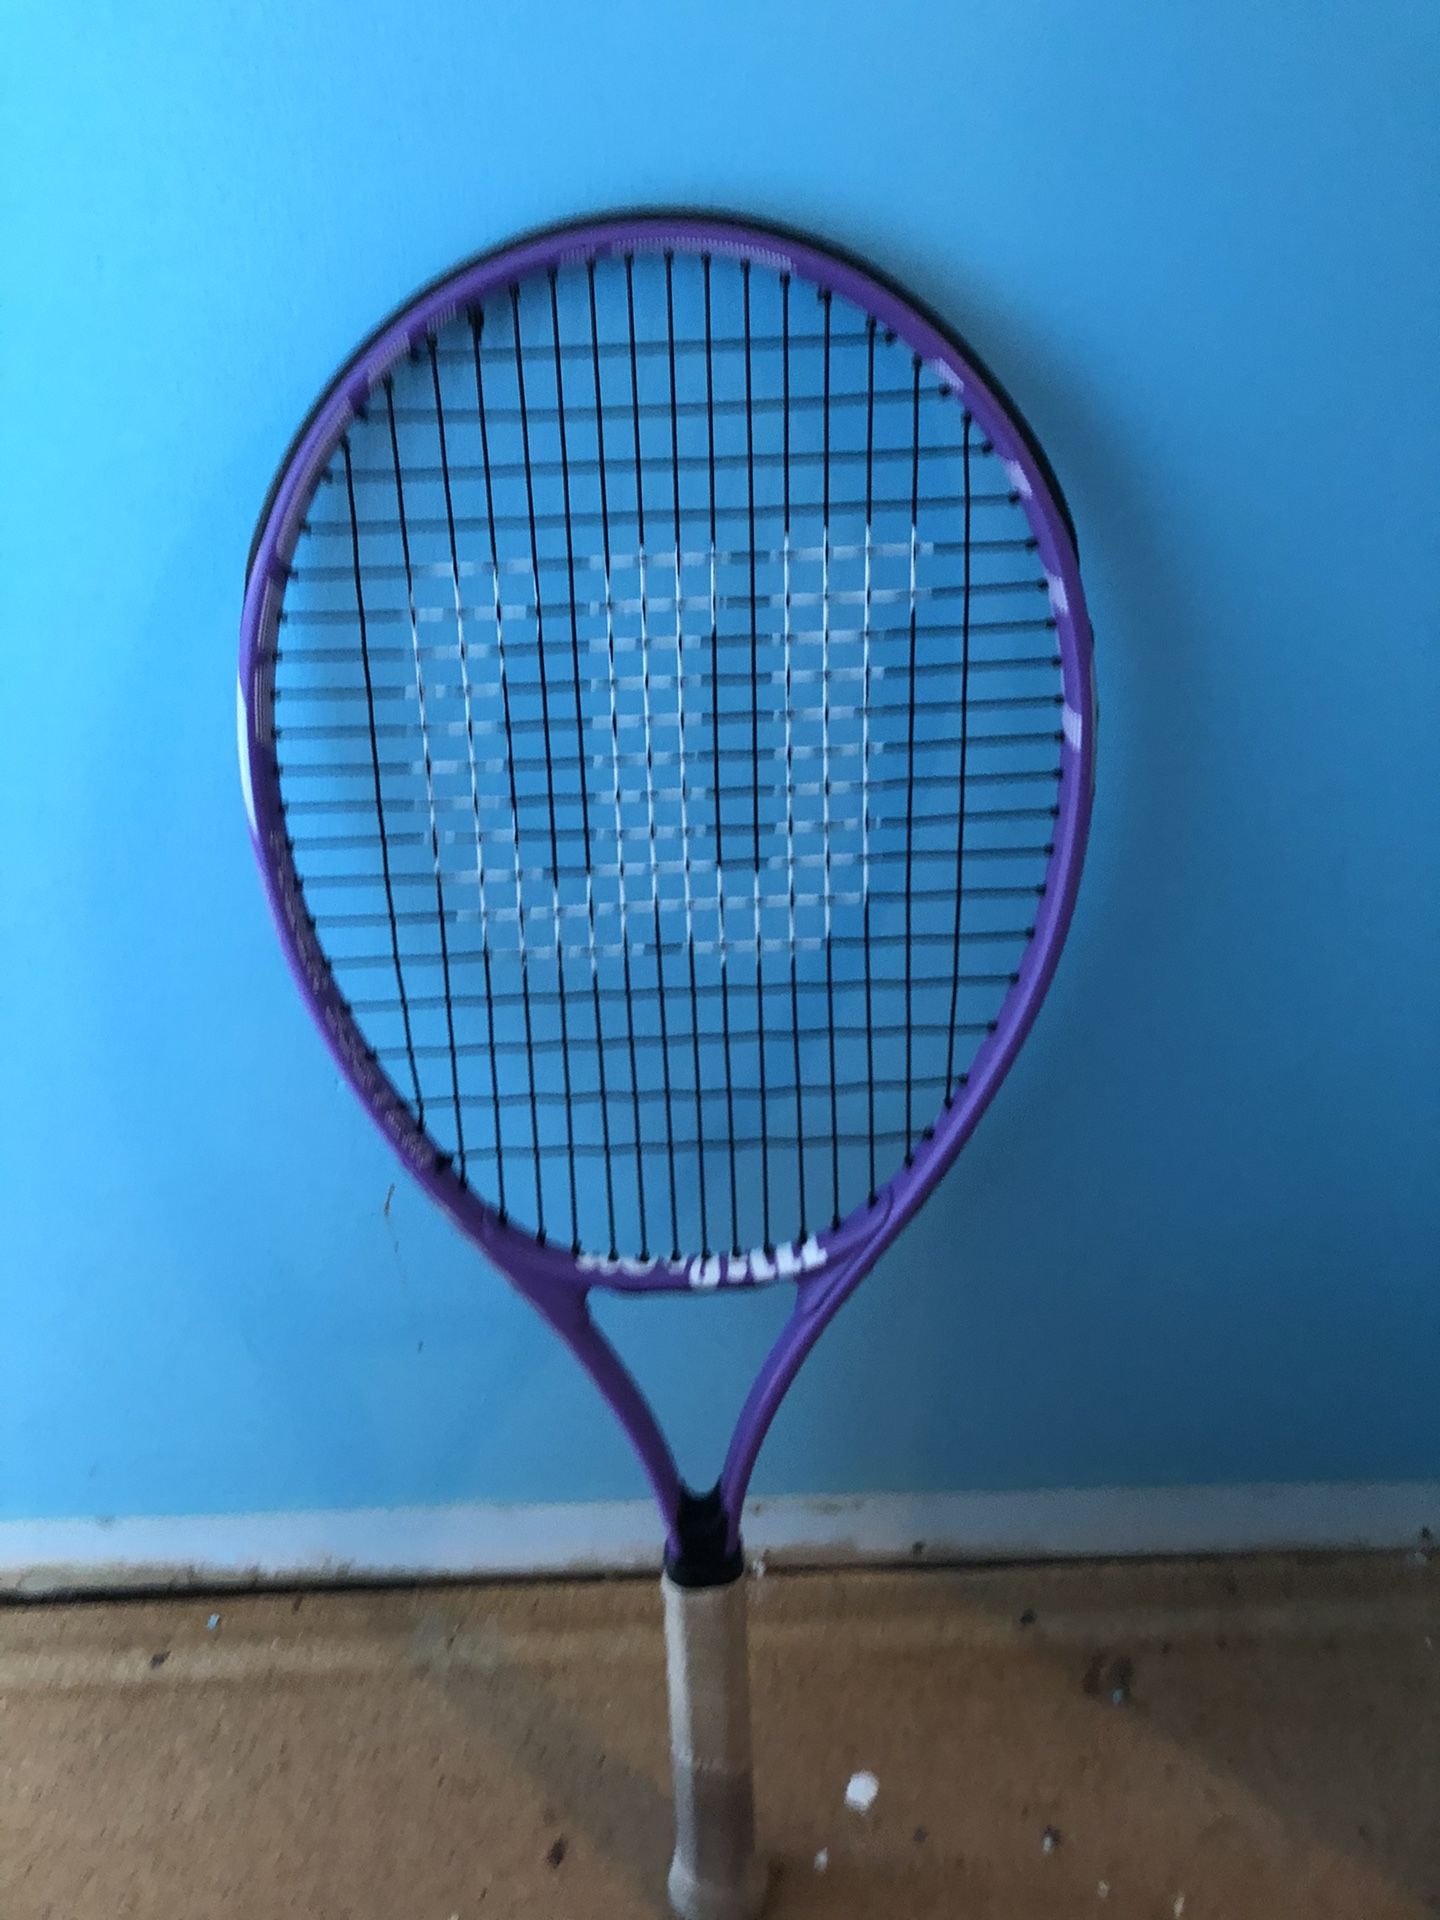 Tennis racket and bag